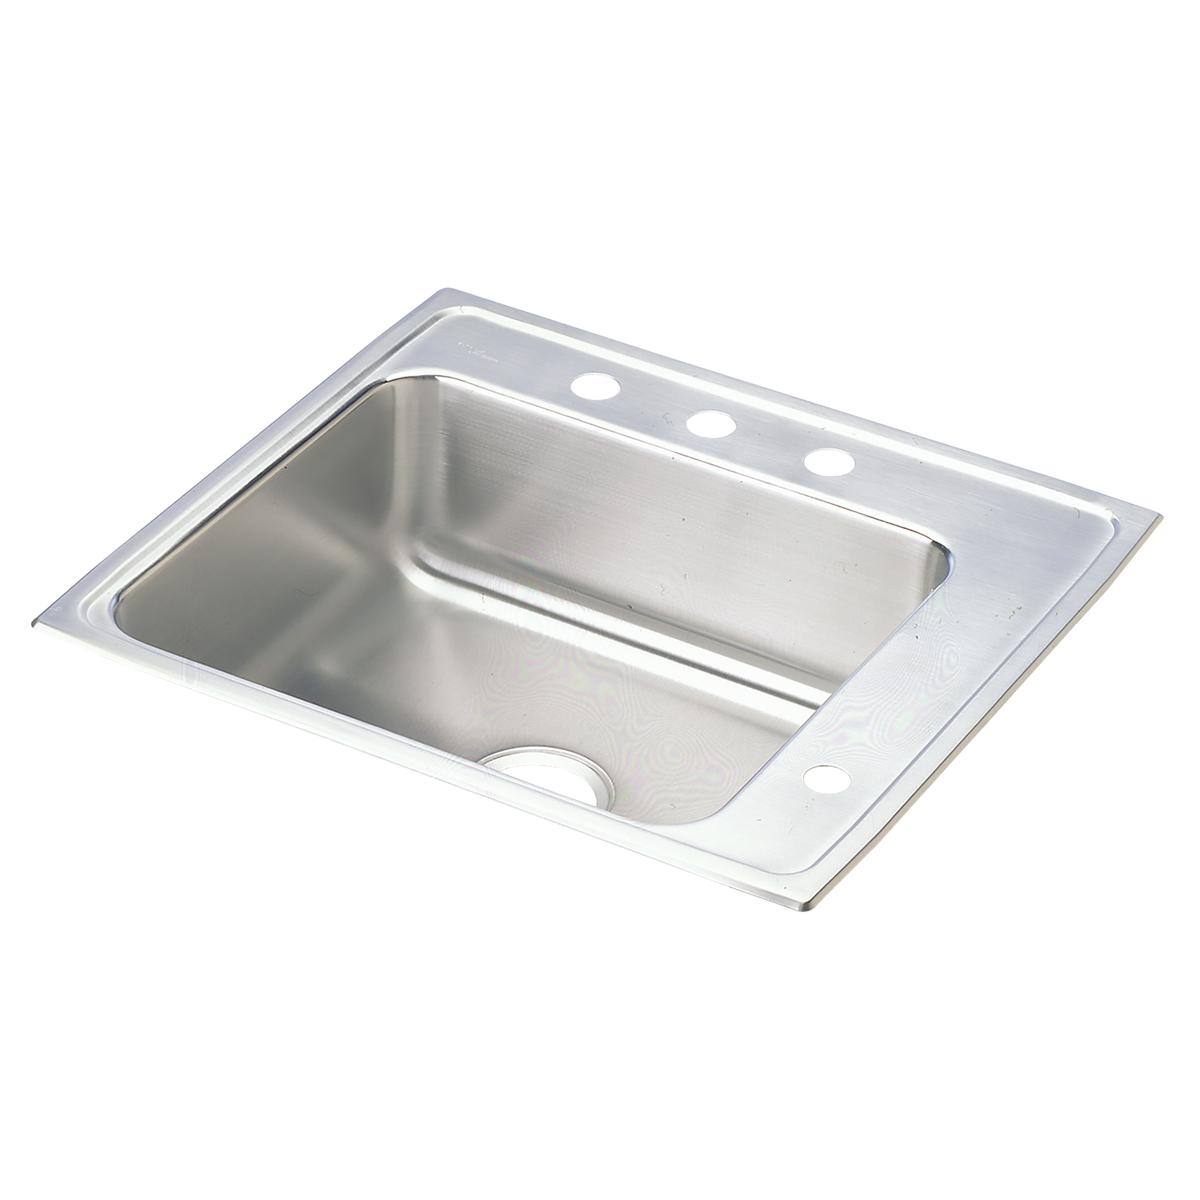 Elkay Stainless Steel Single Bowl Drop-in Sink 2057260